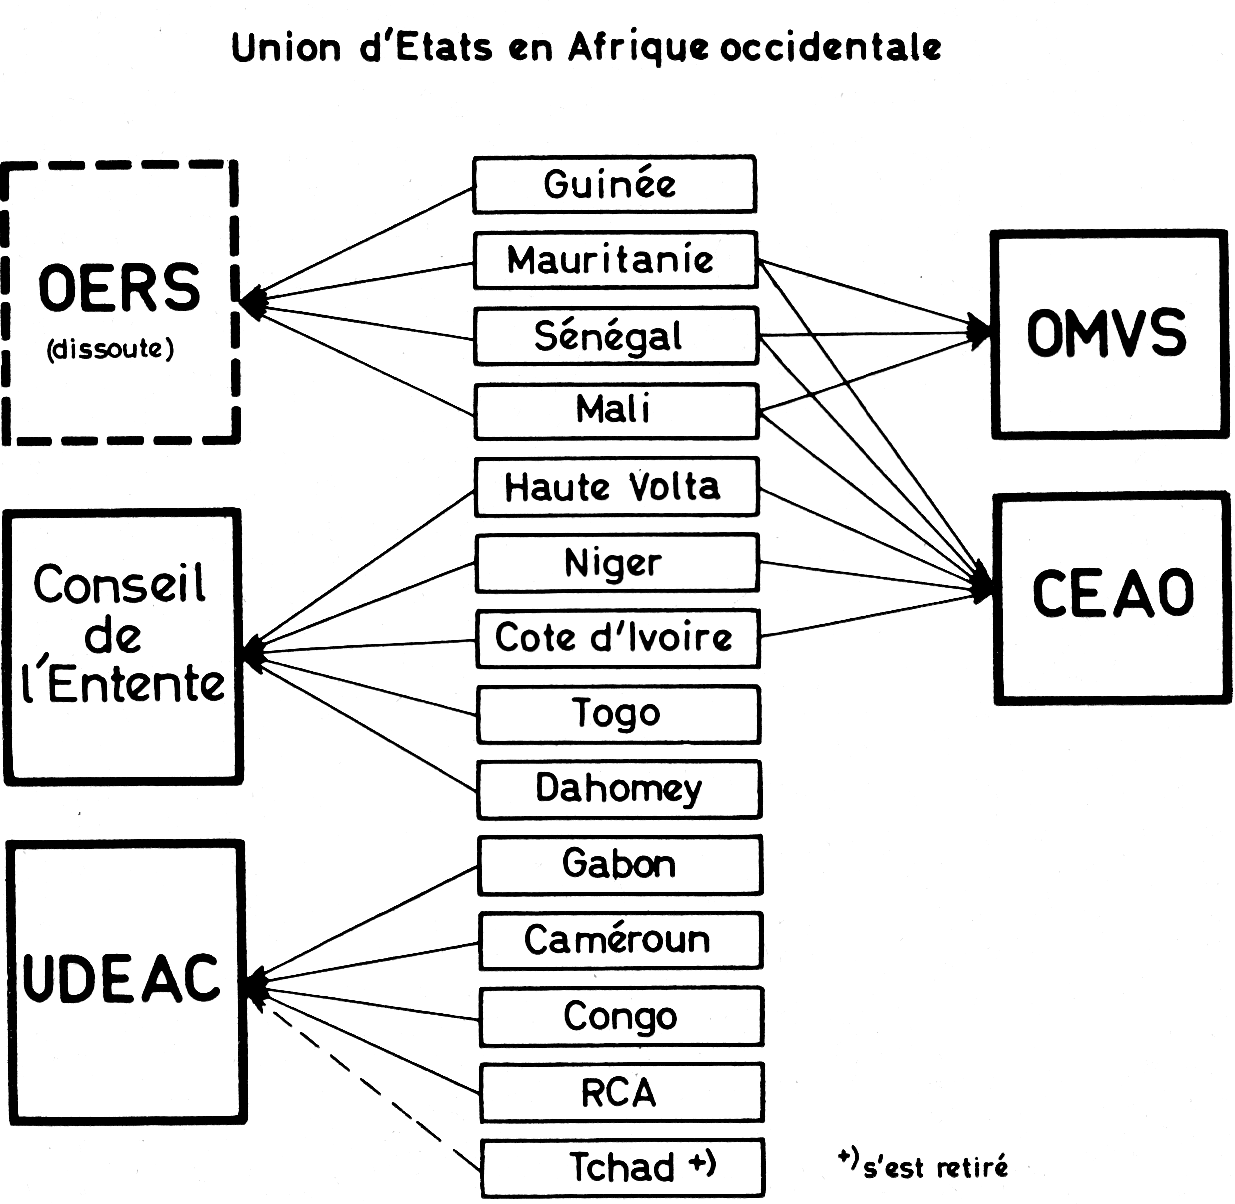 Union d'Etats en Afrique occidentale